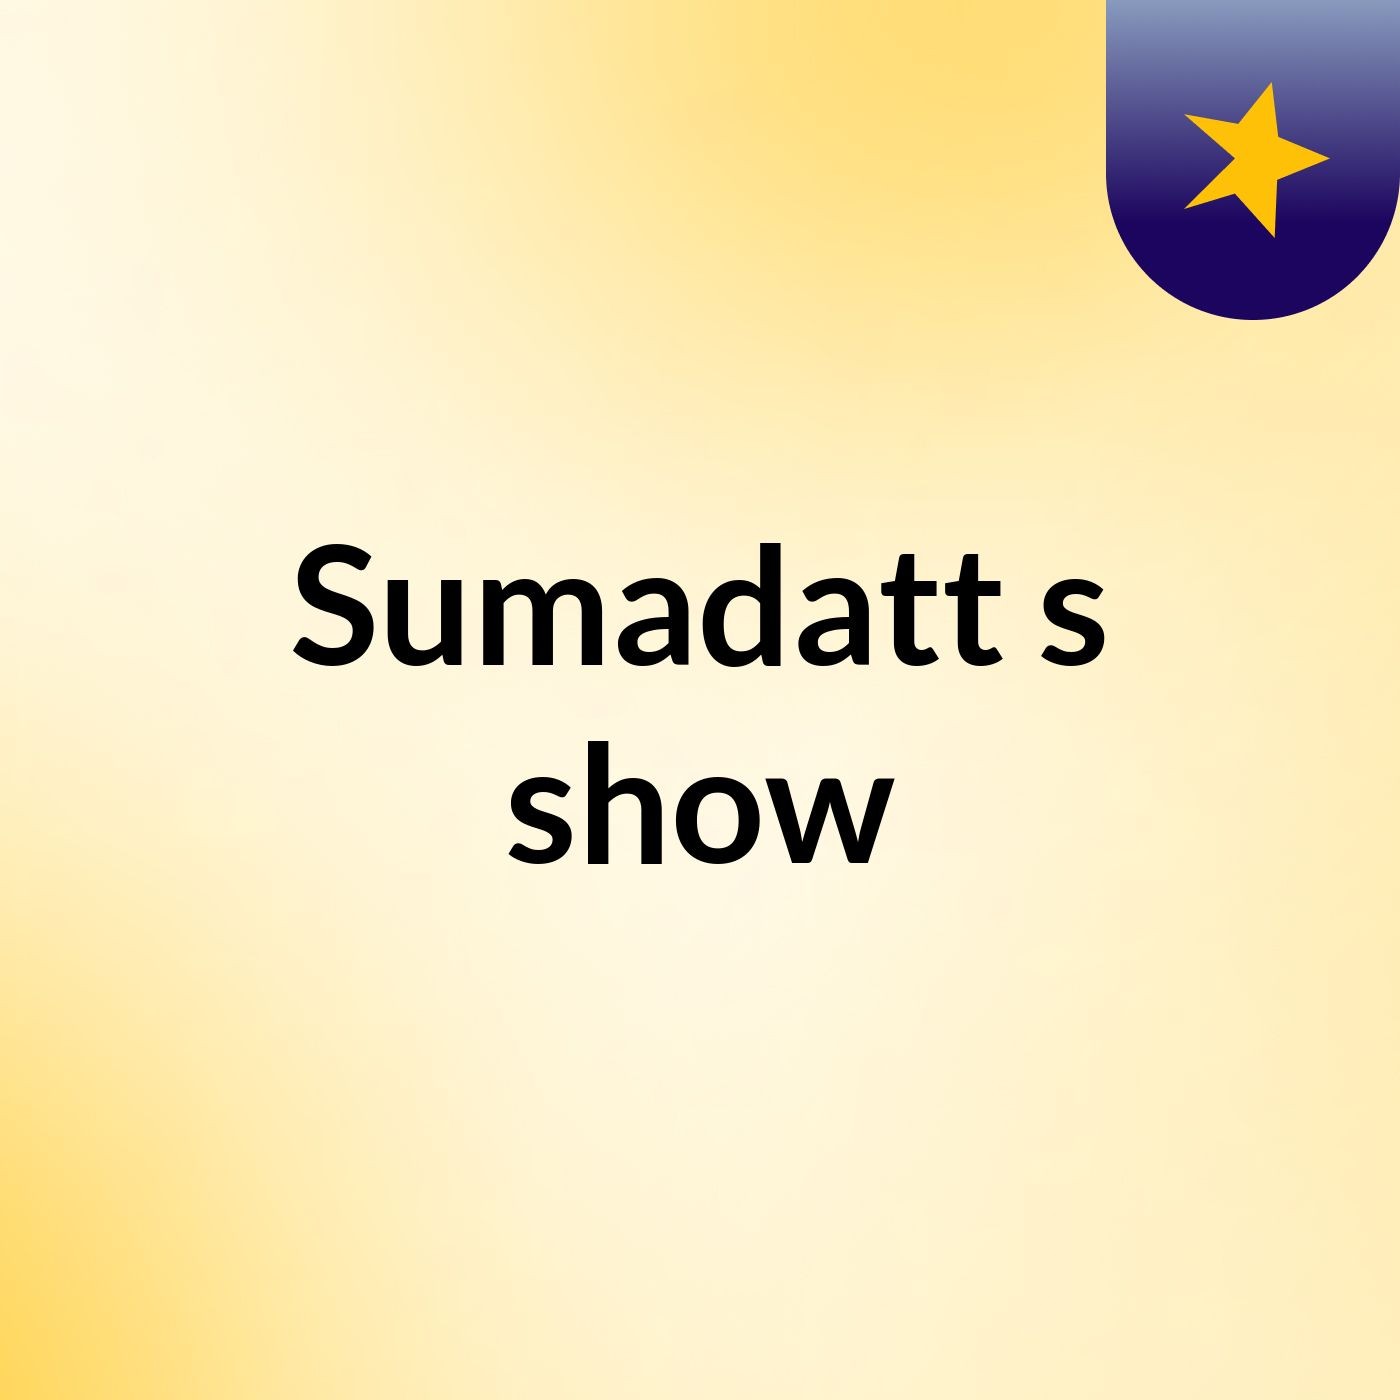 Sumadatt's show